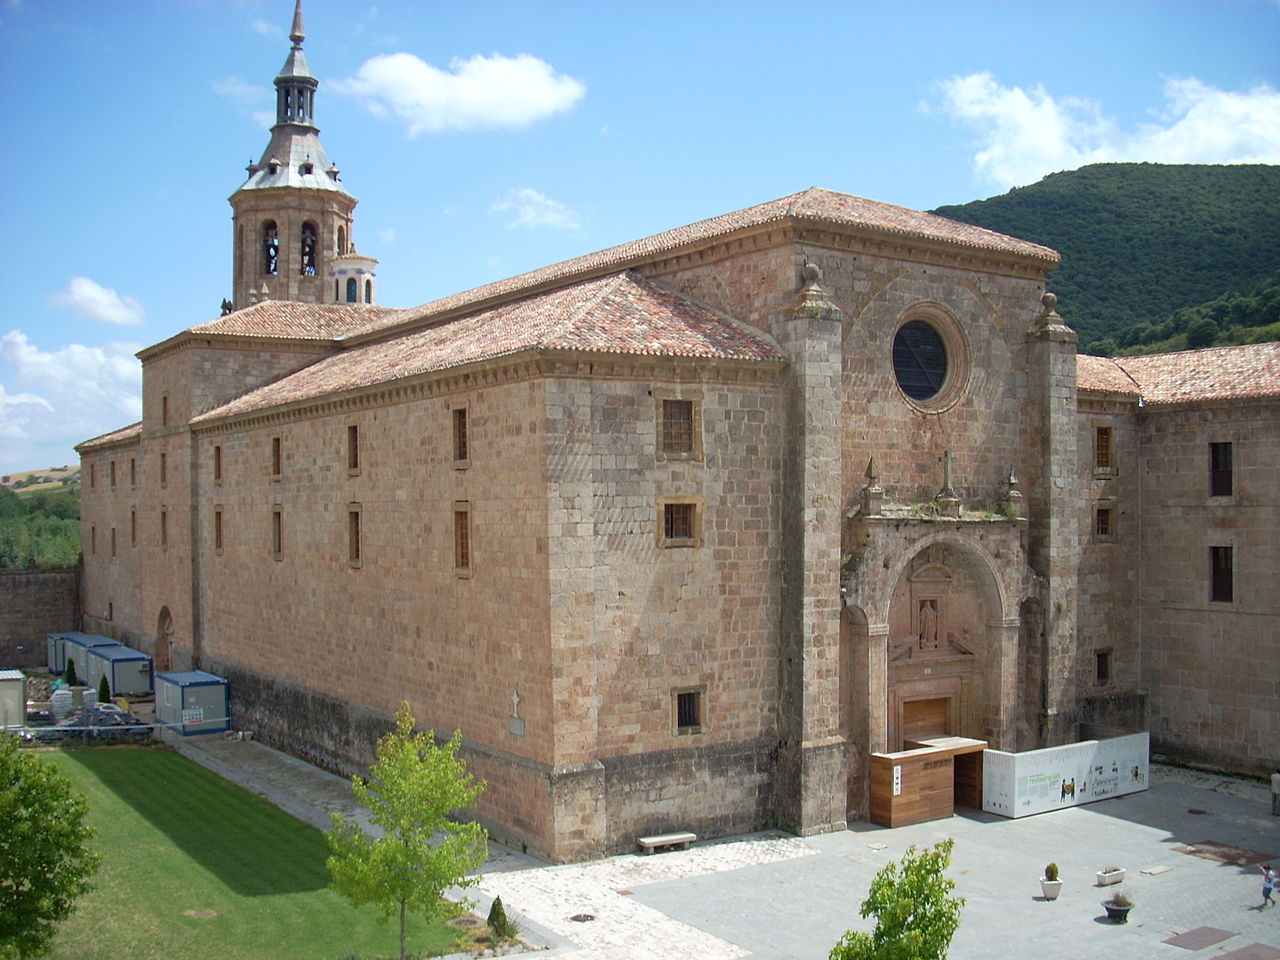 Monasterio de Yuso, La Rioja, Spain | ©Cruccone / Wikimedia Commons